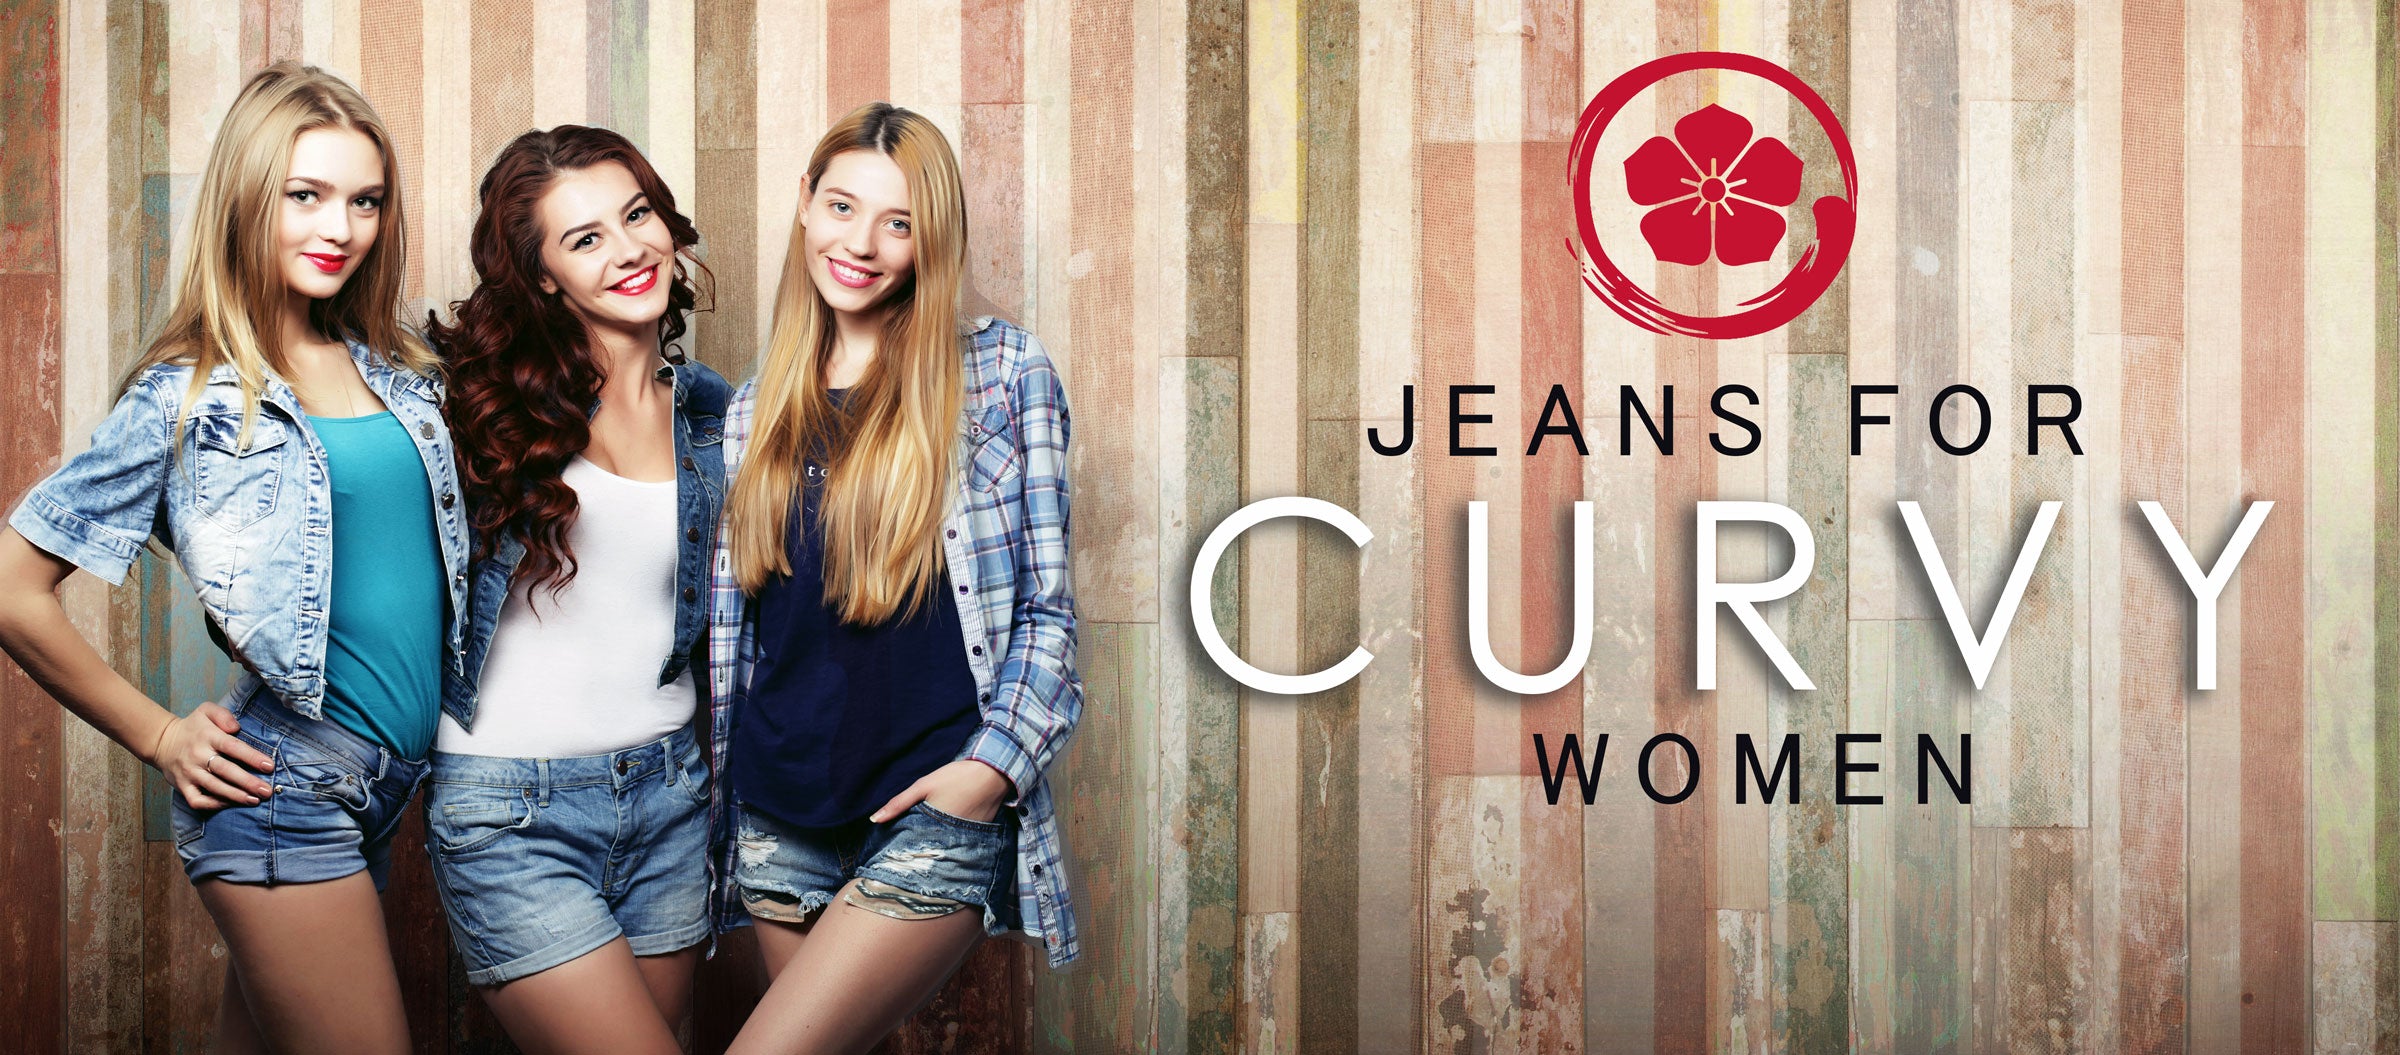 Hana Jeans - Jeans for Curvy Women